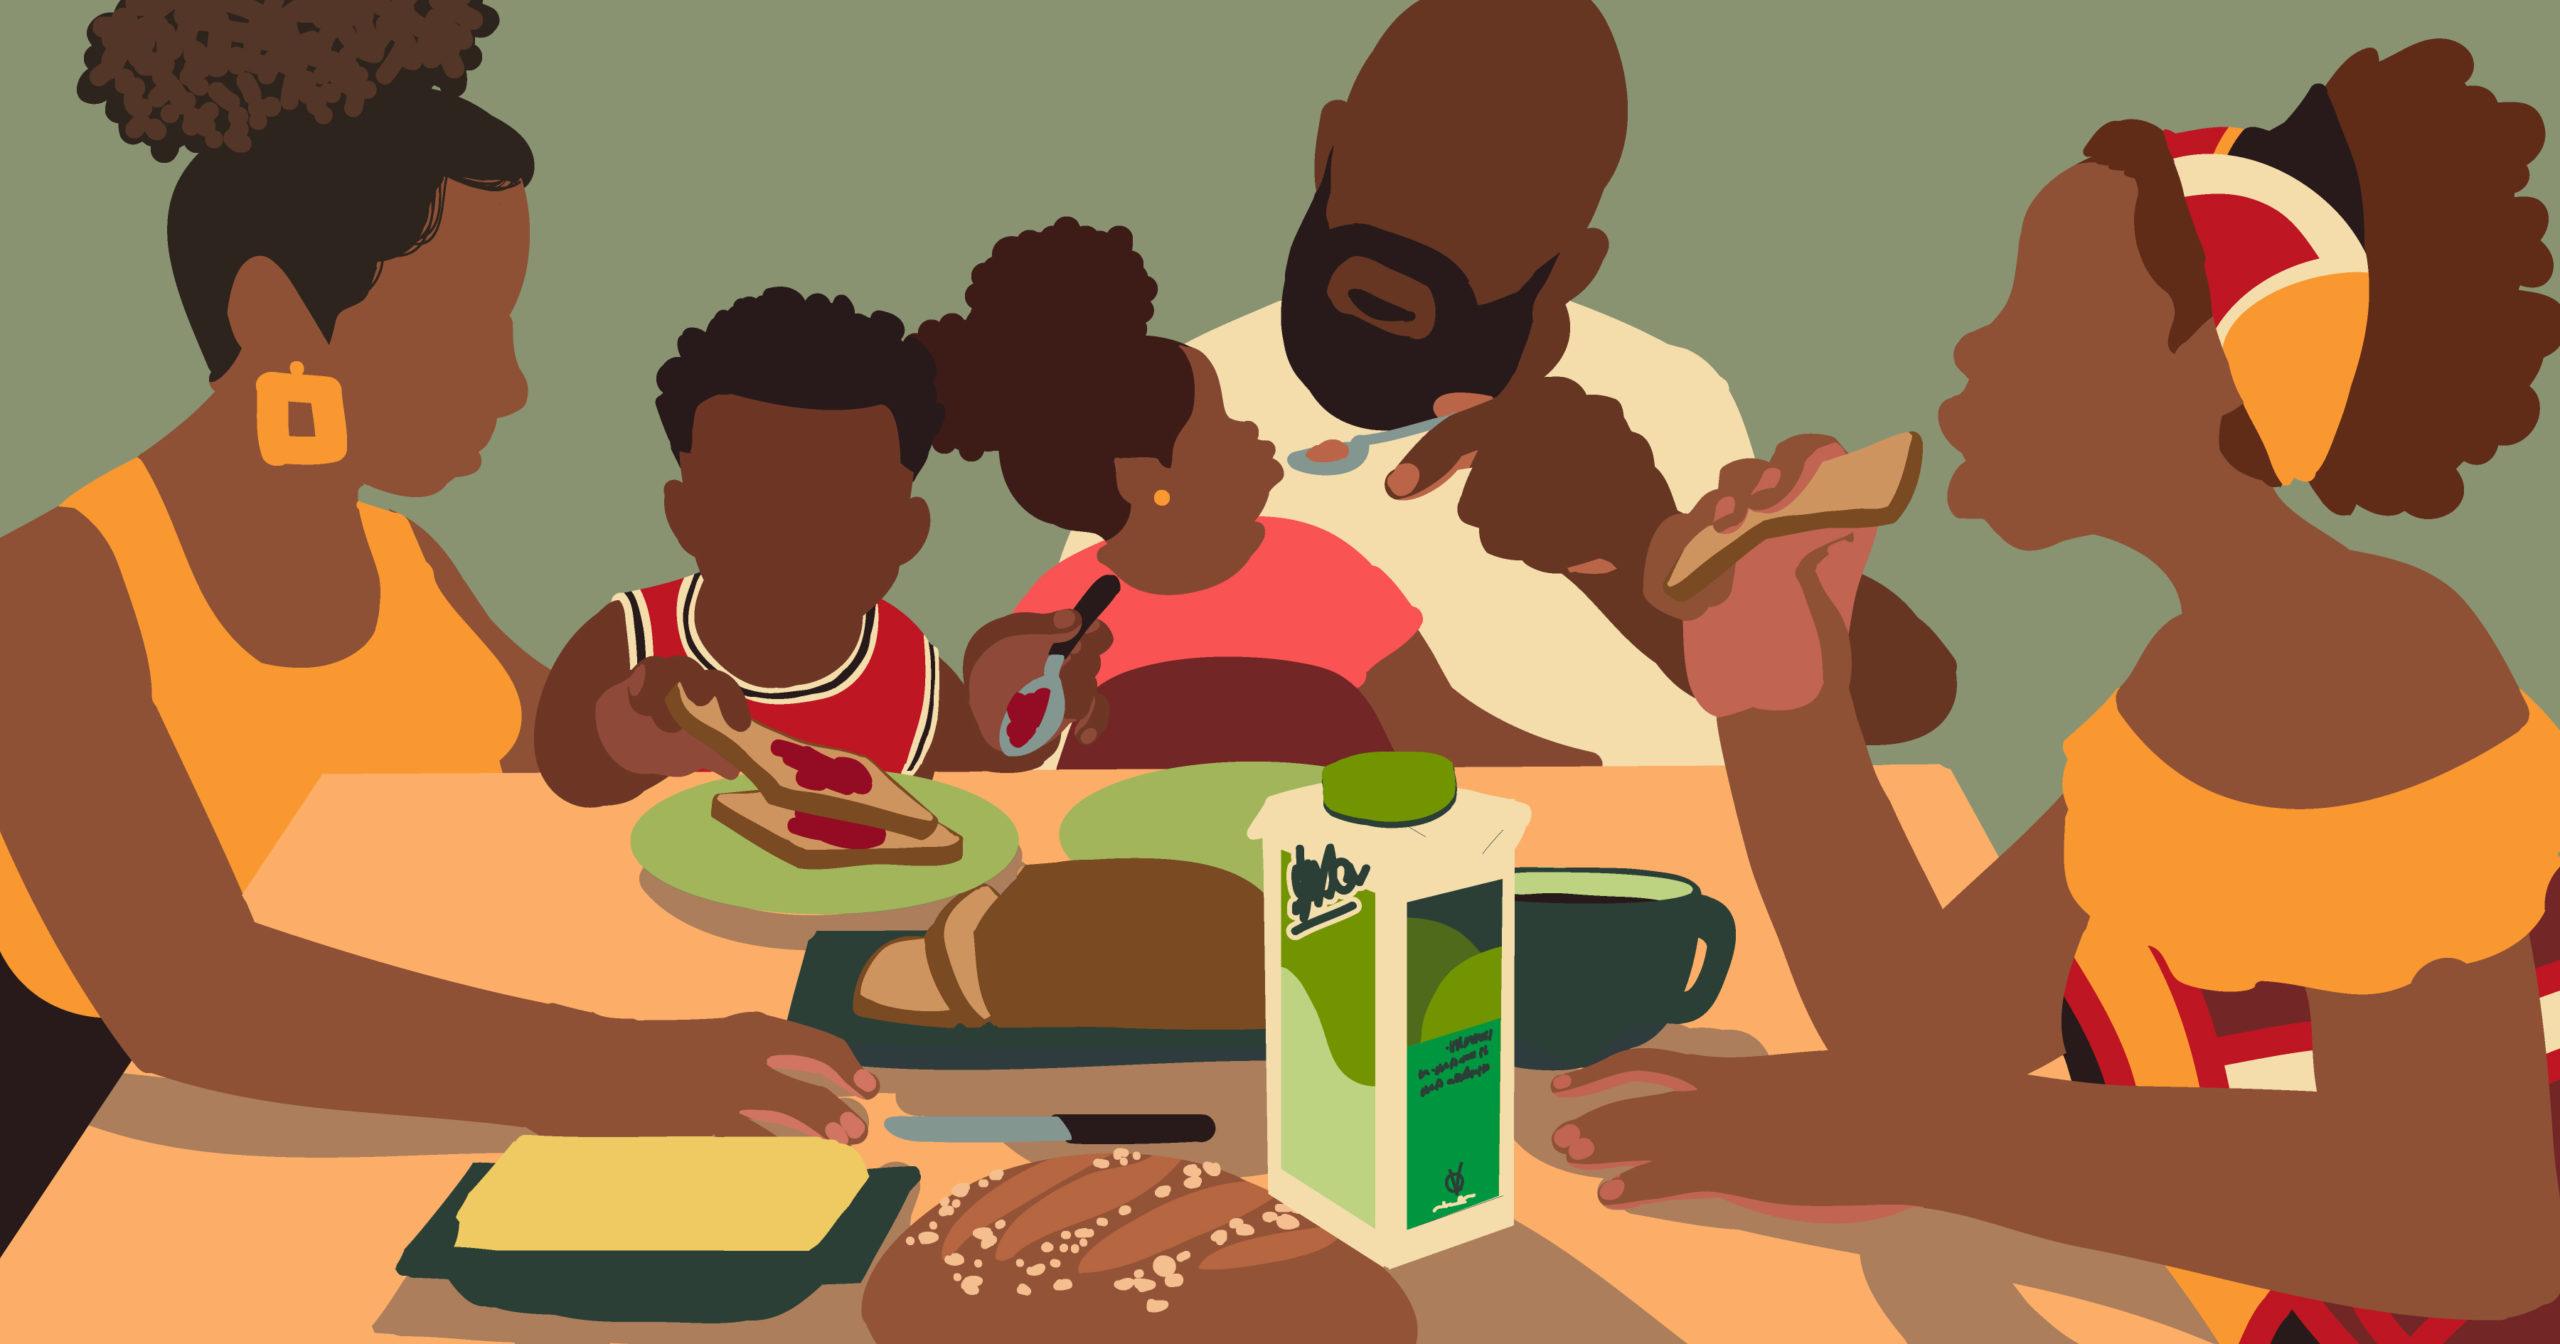 Ilustração de uma família negra sentada à mesa, fazendo uma refeição, feita para Adweek.